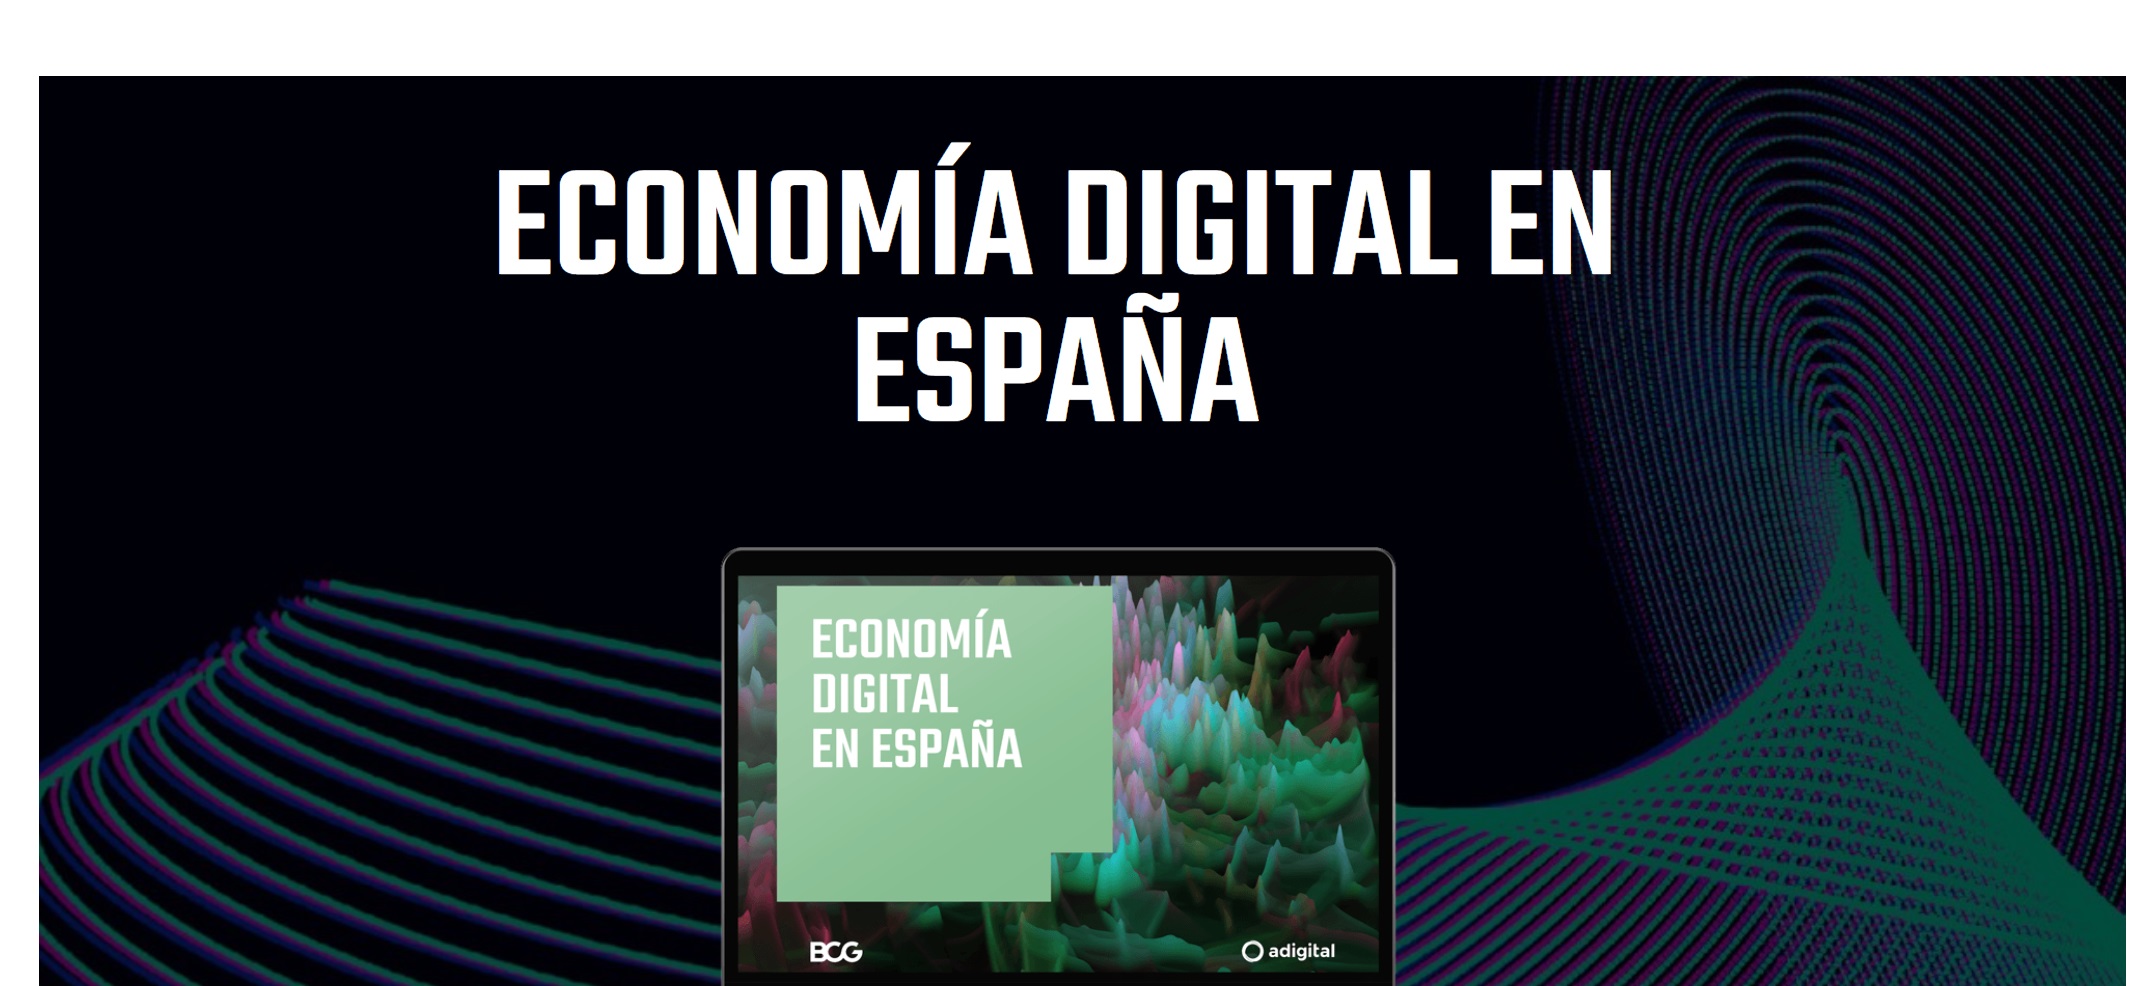 economia digital, españa, bcg, adigital, programapublicidad